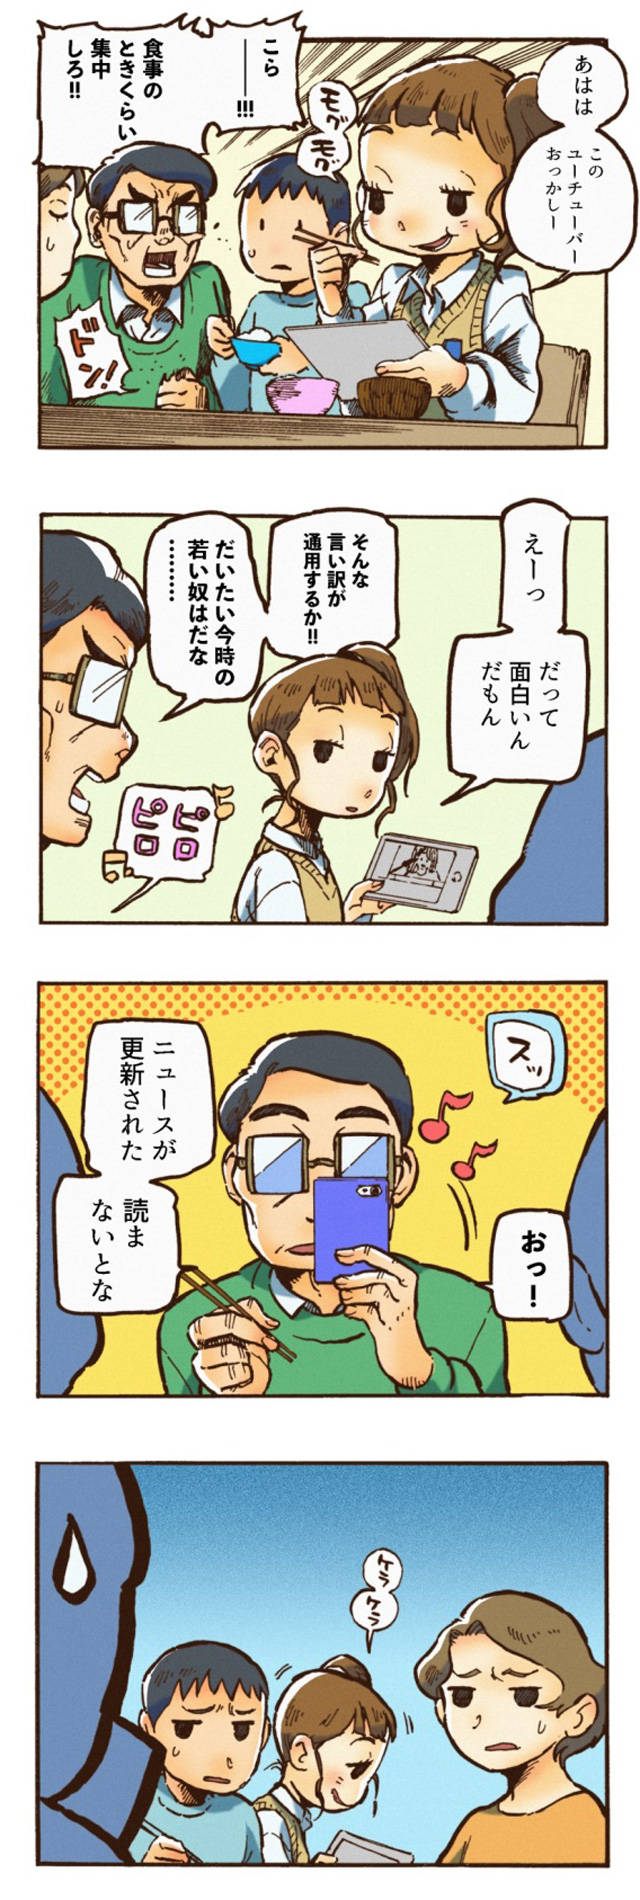 沼田先生による、受賞作から作ったイメージ4コマ漫画。食事中にスマホを見ている娘を注意した父が、自分も見ているオチ